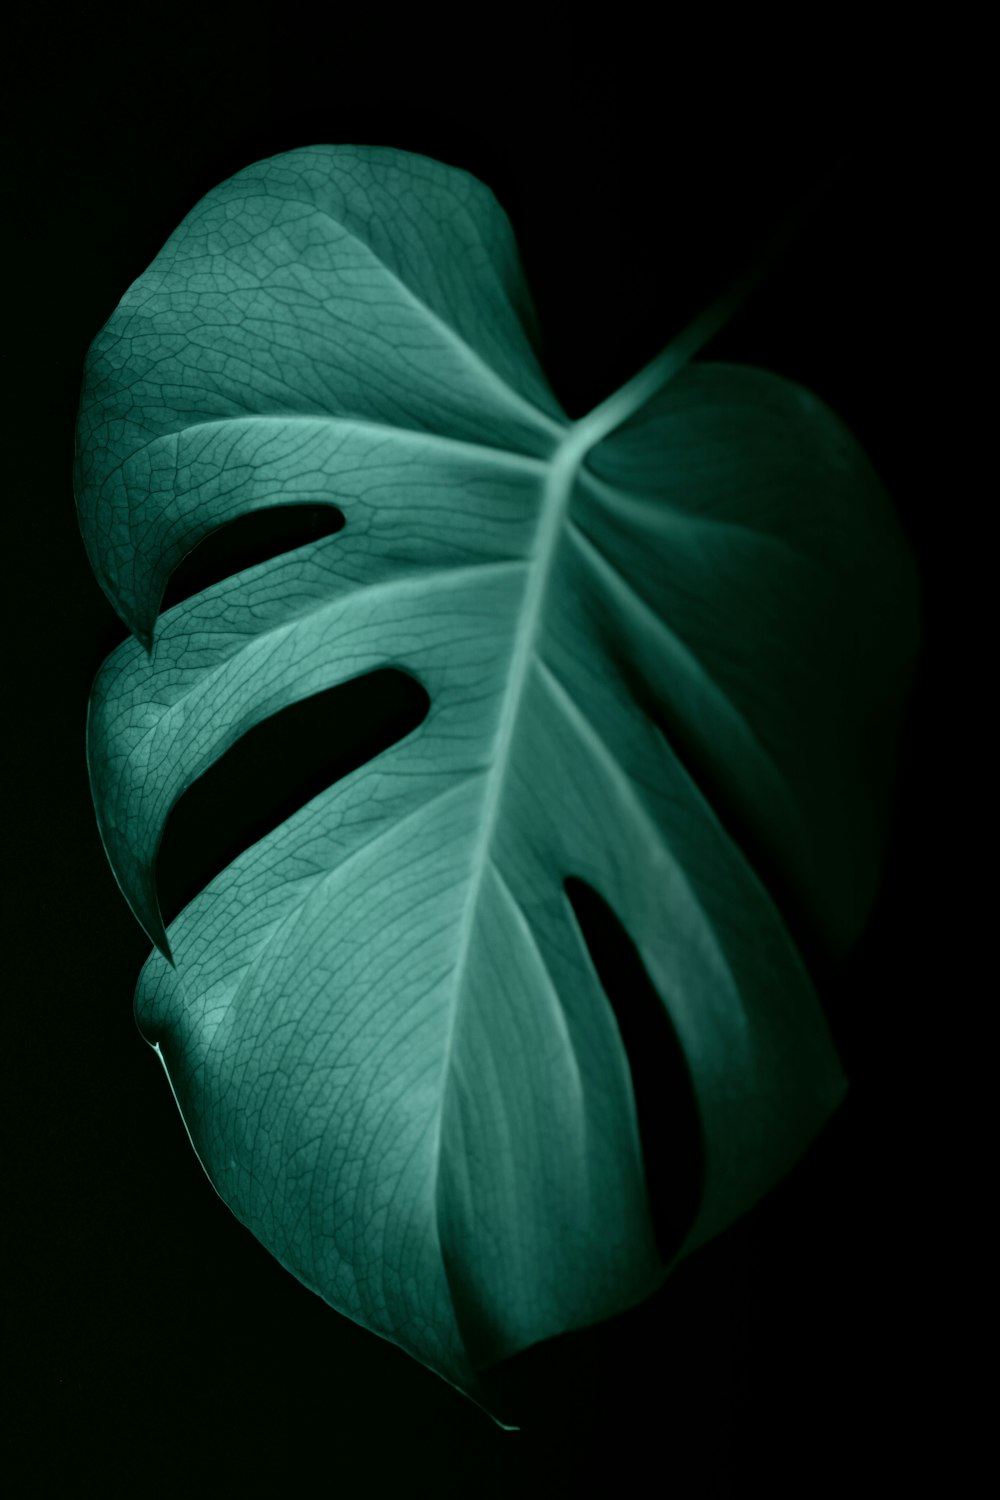 green leaf in dark surface